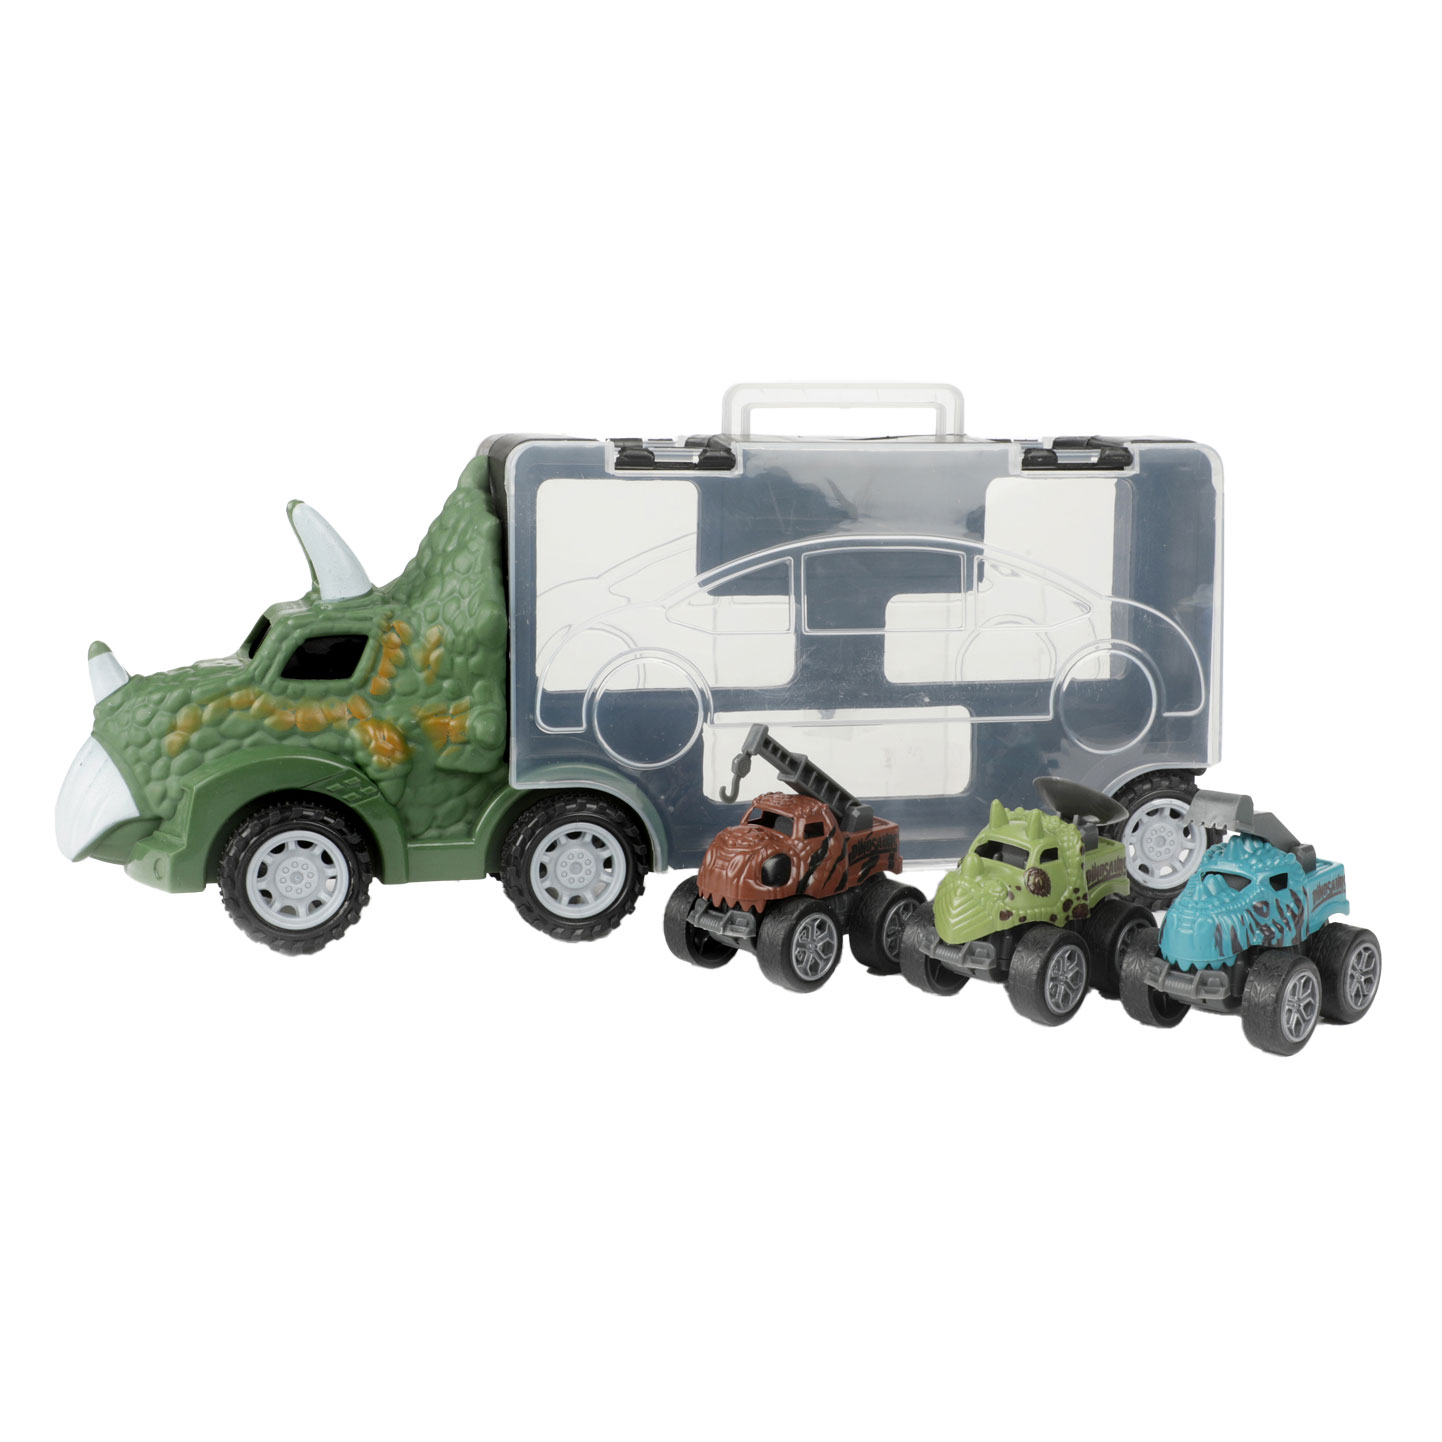 Kaufen Sie World of Dinosaurs Dino-Truck mit 3